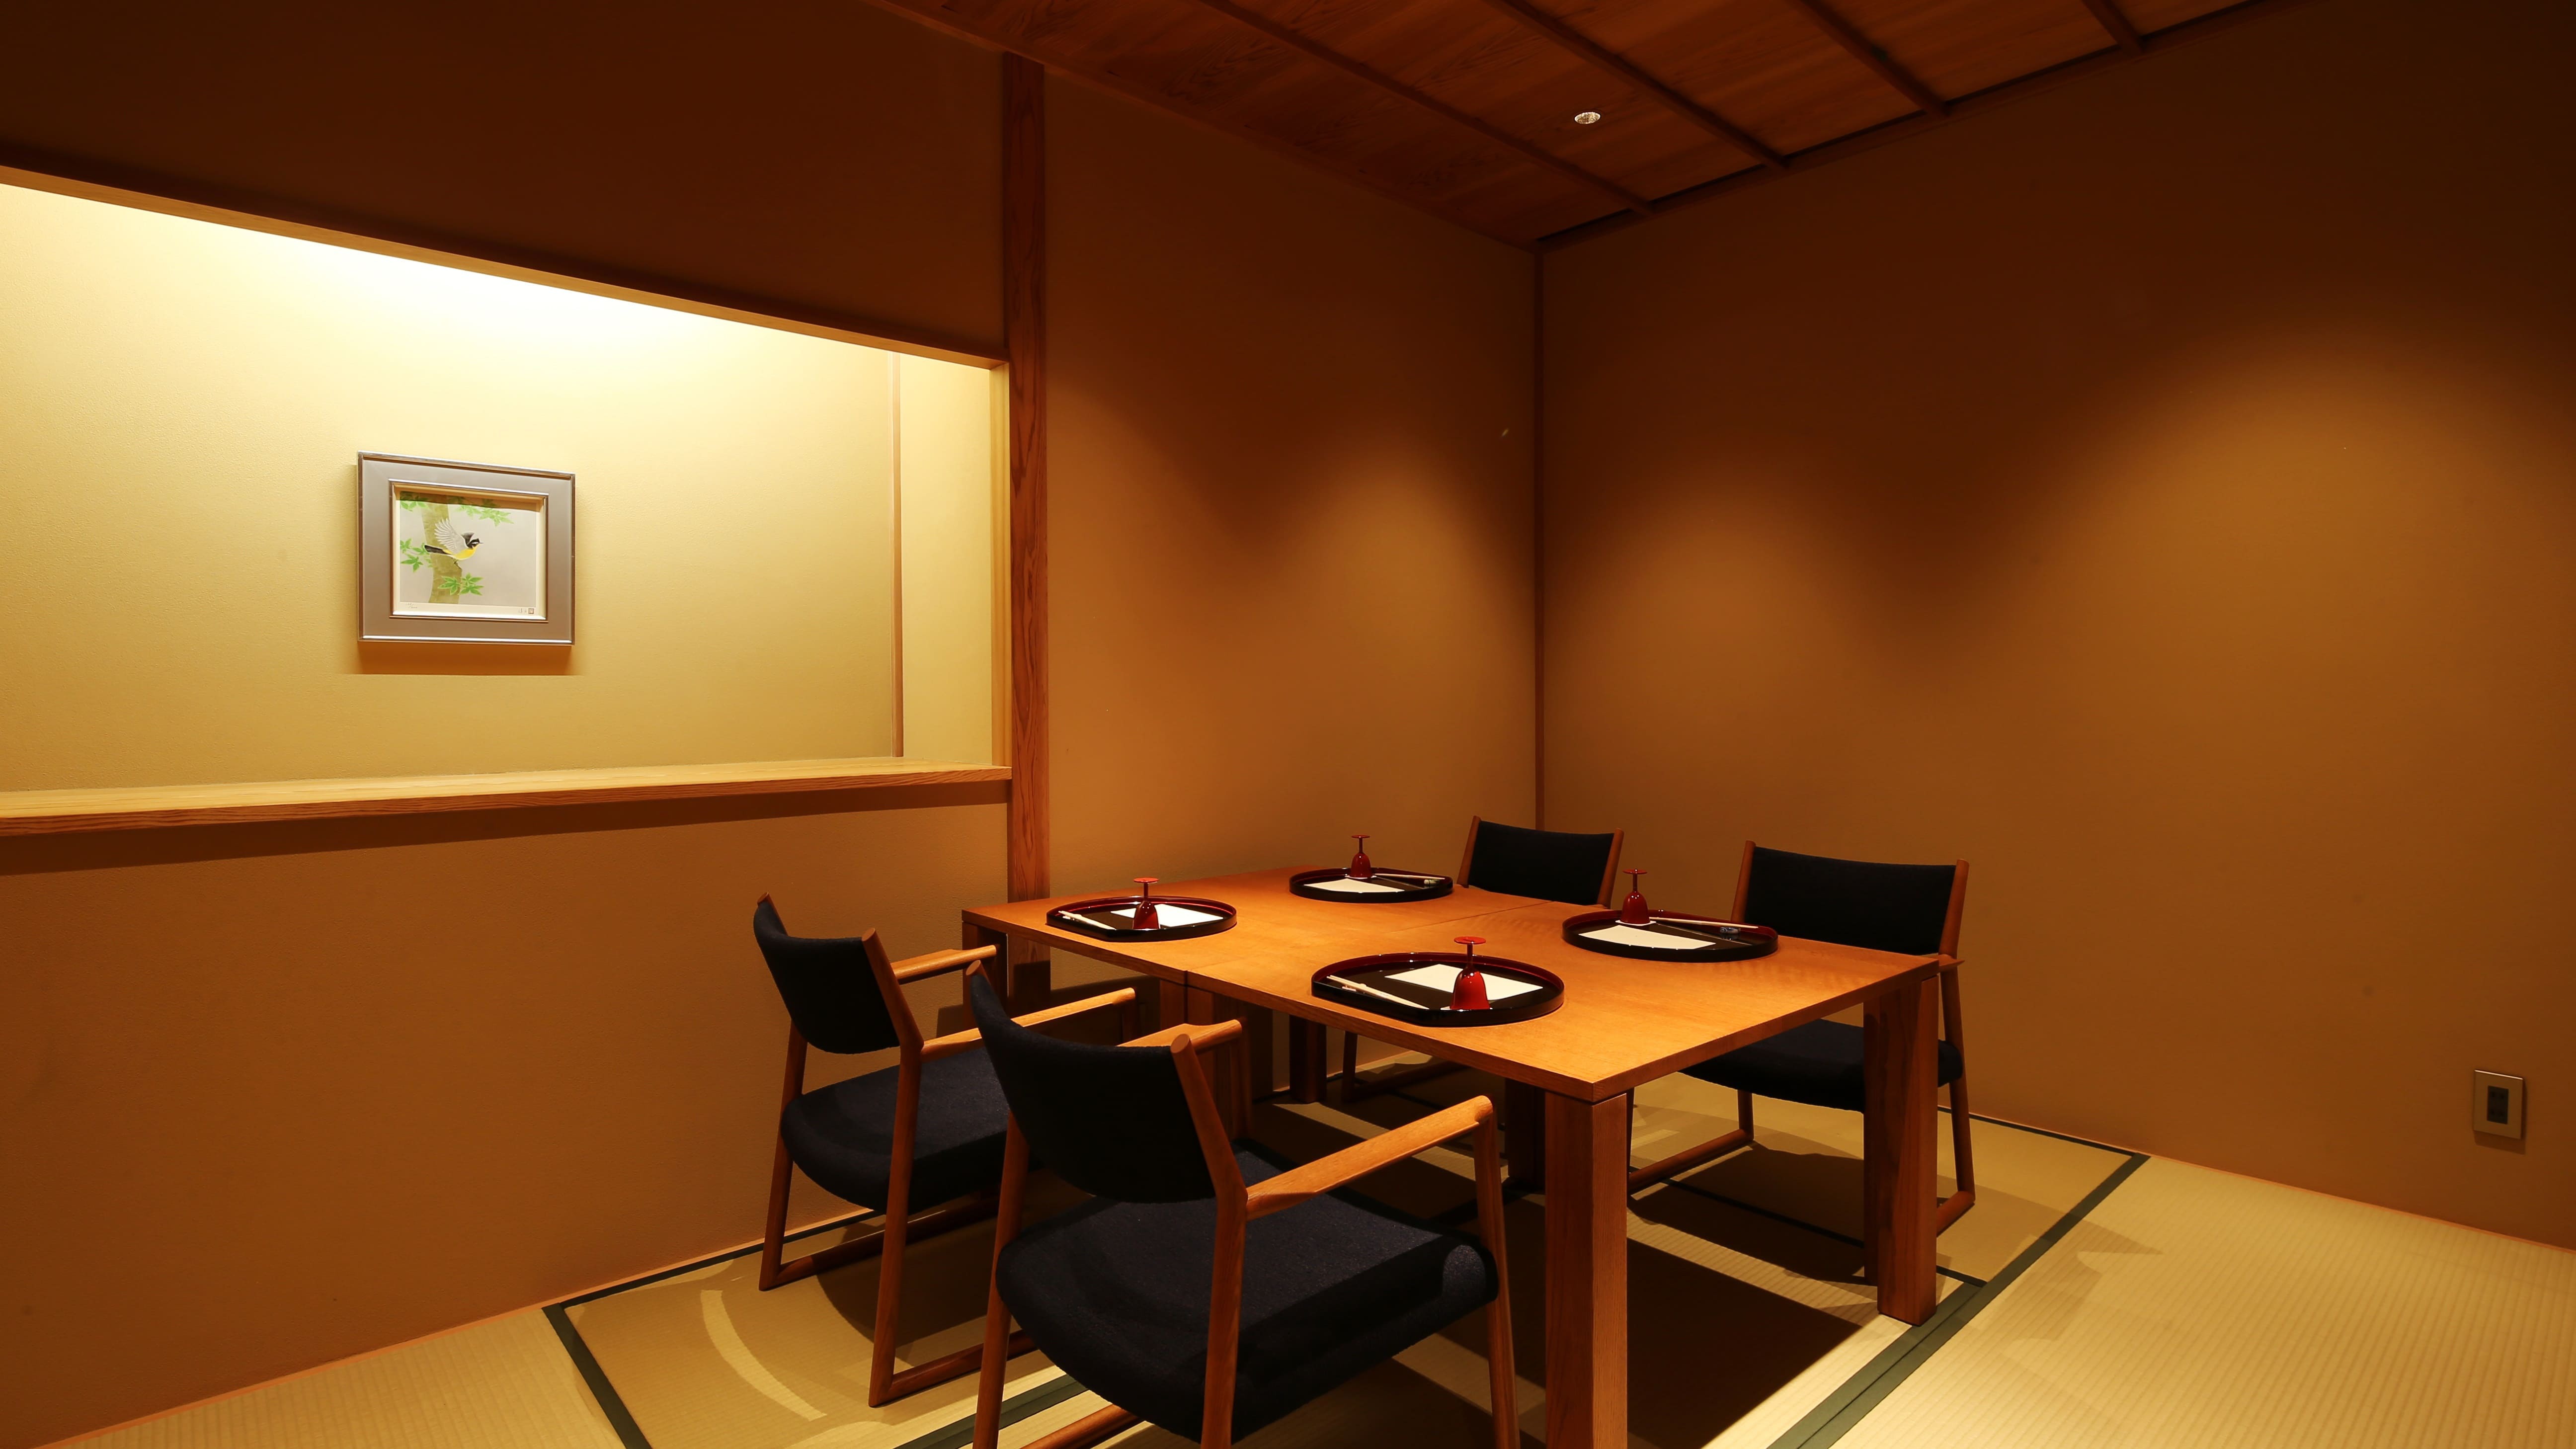 【食事処】個室食事処。文珠荘グループ総料理長による京都・丹後の味をごゆっくりご賞味下さい。